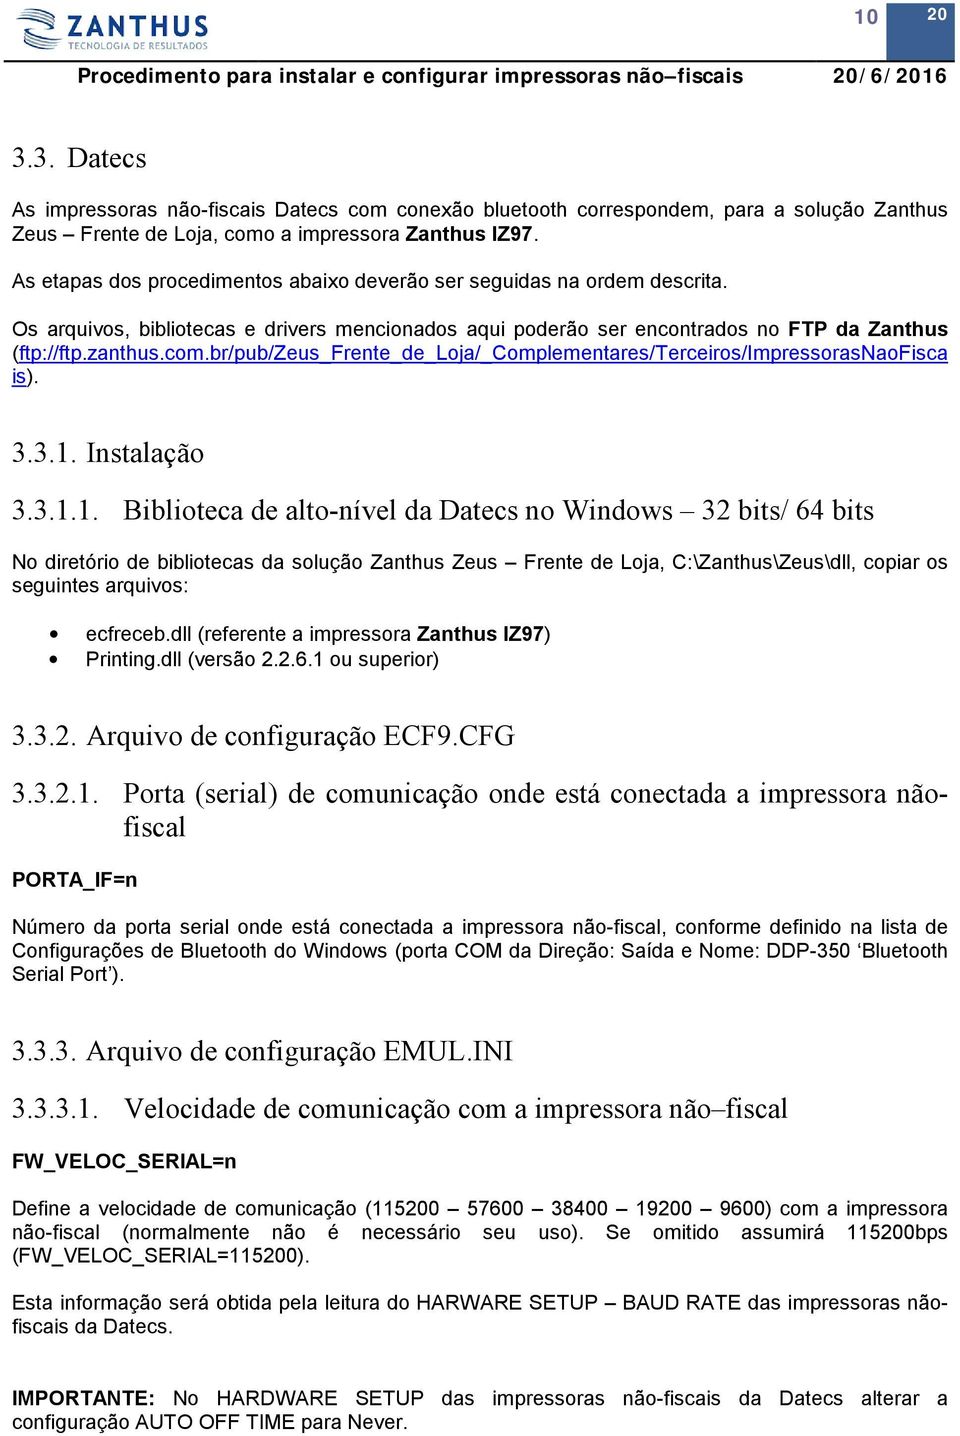 br/pub/zeus_frente_de_loja/_complementares/terceiros/impressorasnaofisca is). 3.3.1.